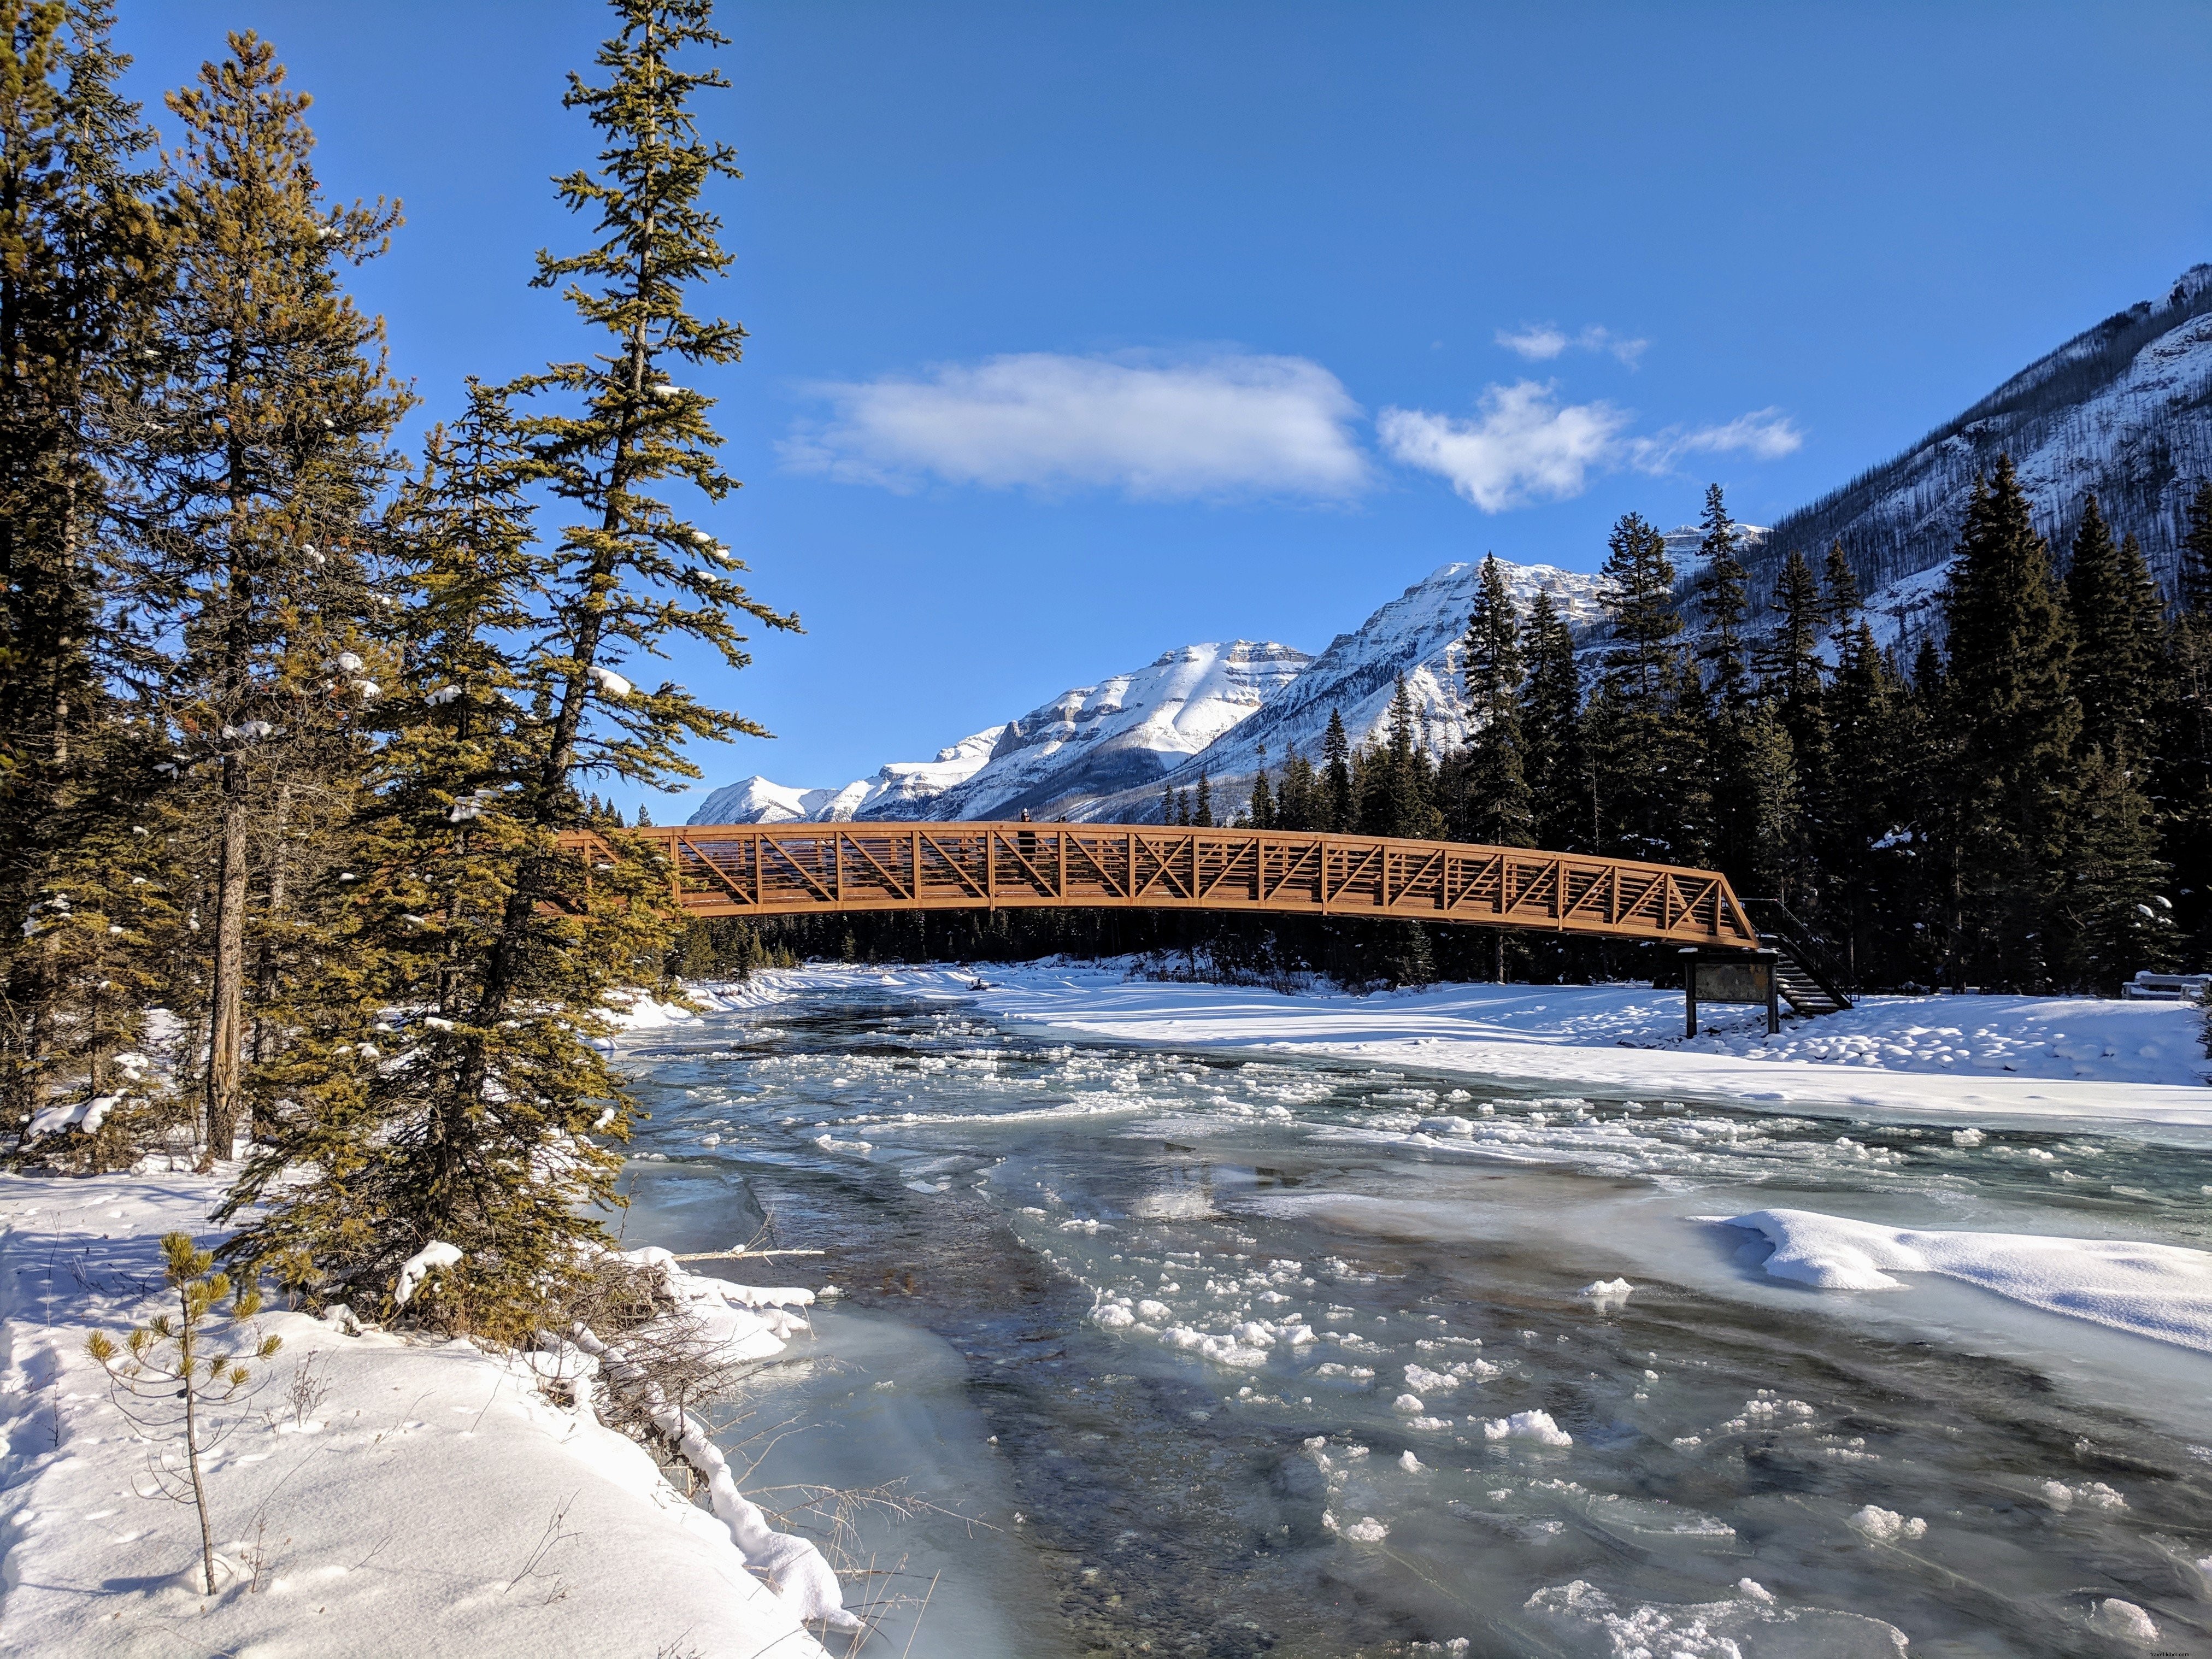 Foto de uma ponte de um rio congelado